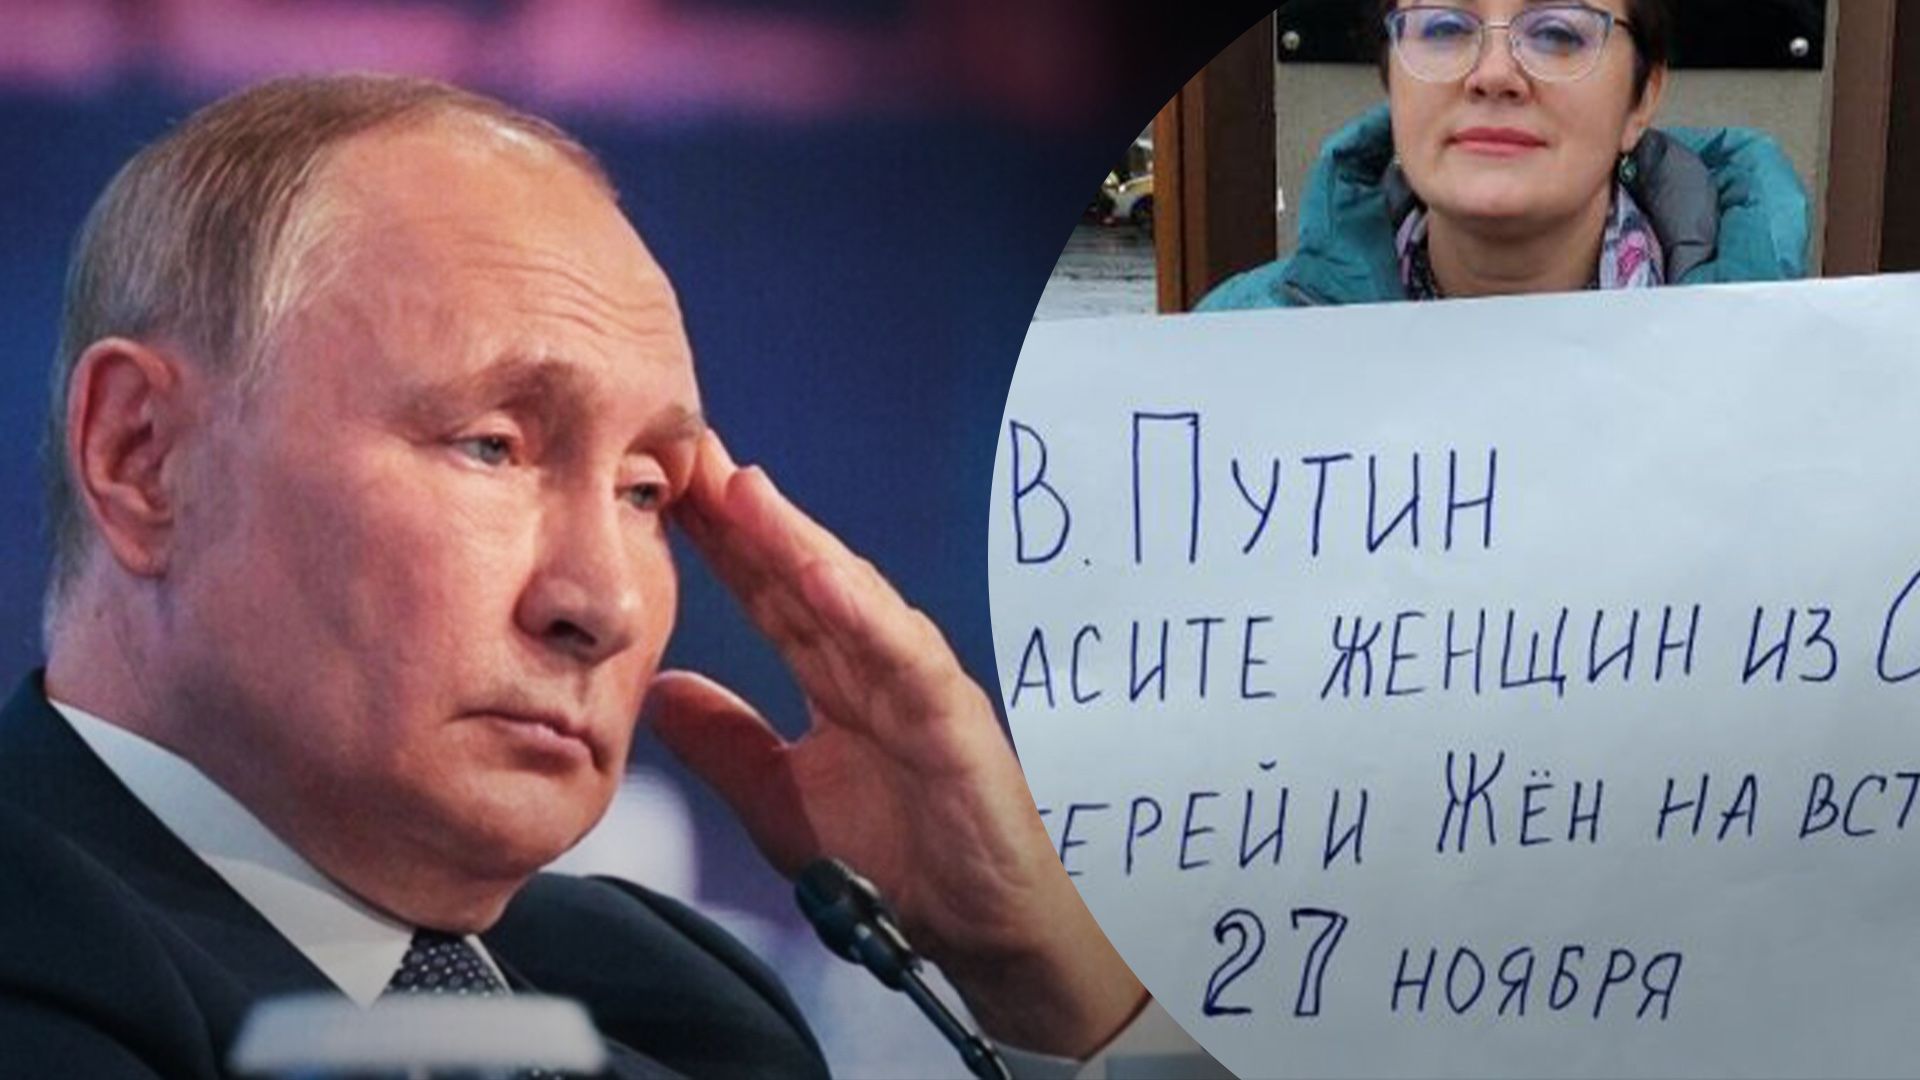 "Ви чоловік чи хто": матері й дружини окупантів закликали Путіна "не ховатися" й висунули вимогу - 24 Канал